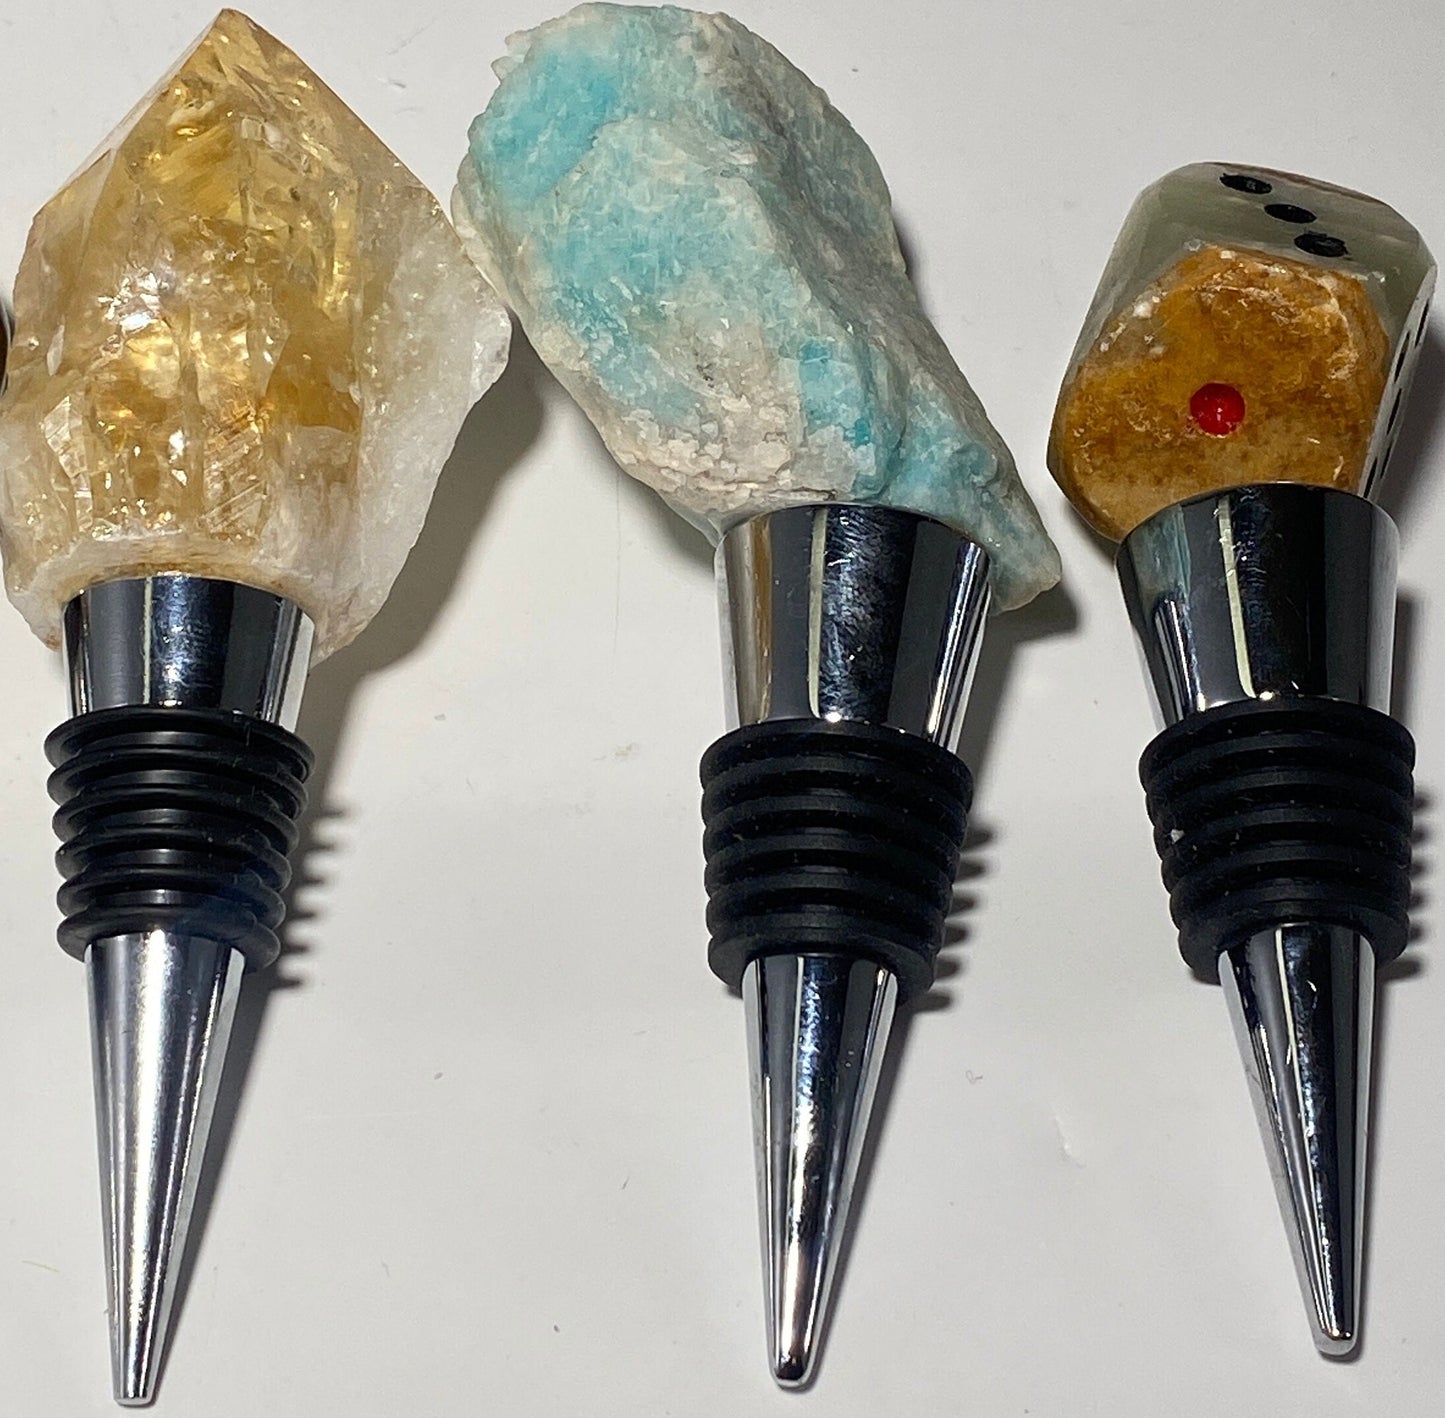 Bottle stopper - stone specimens